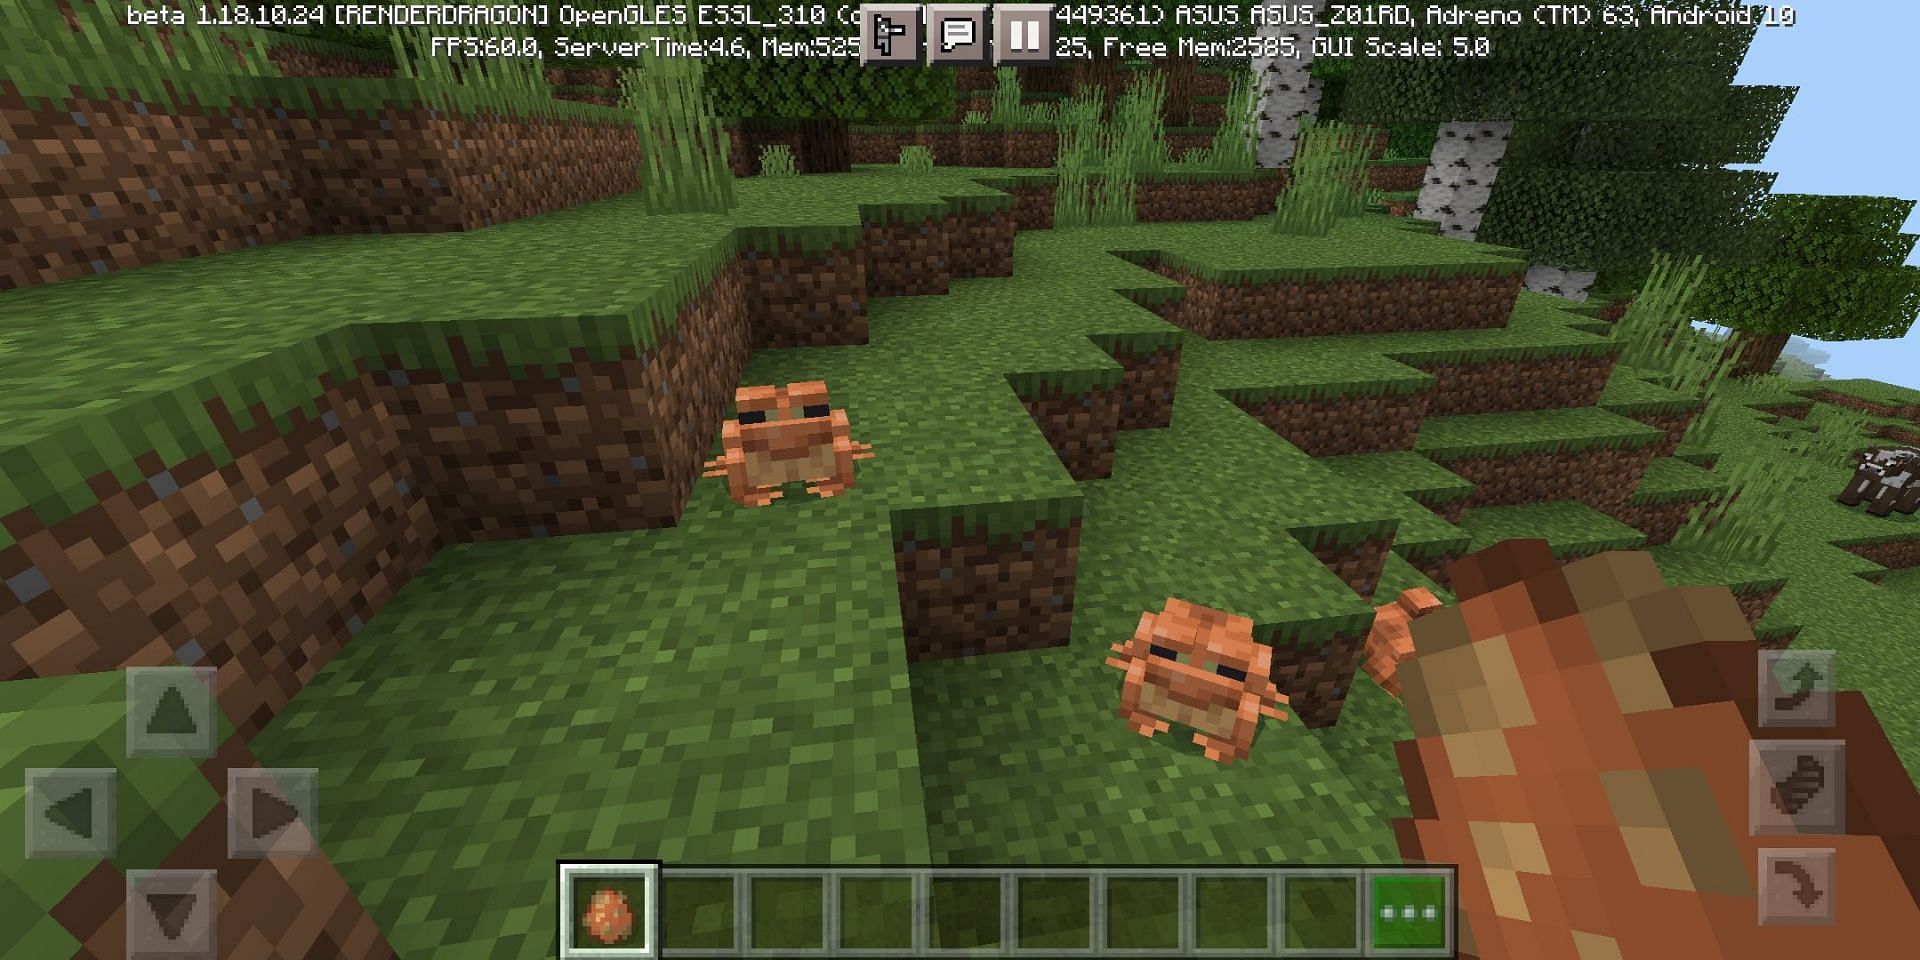 Frogs in new Bedrock beta (Image via Minecraft)